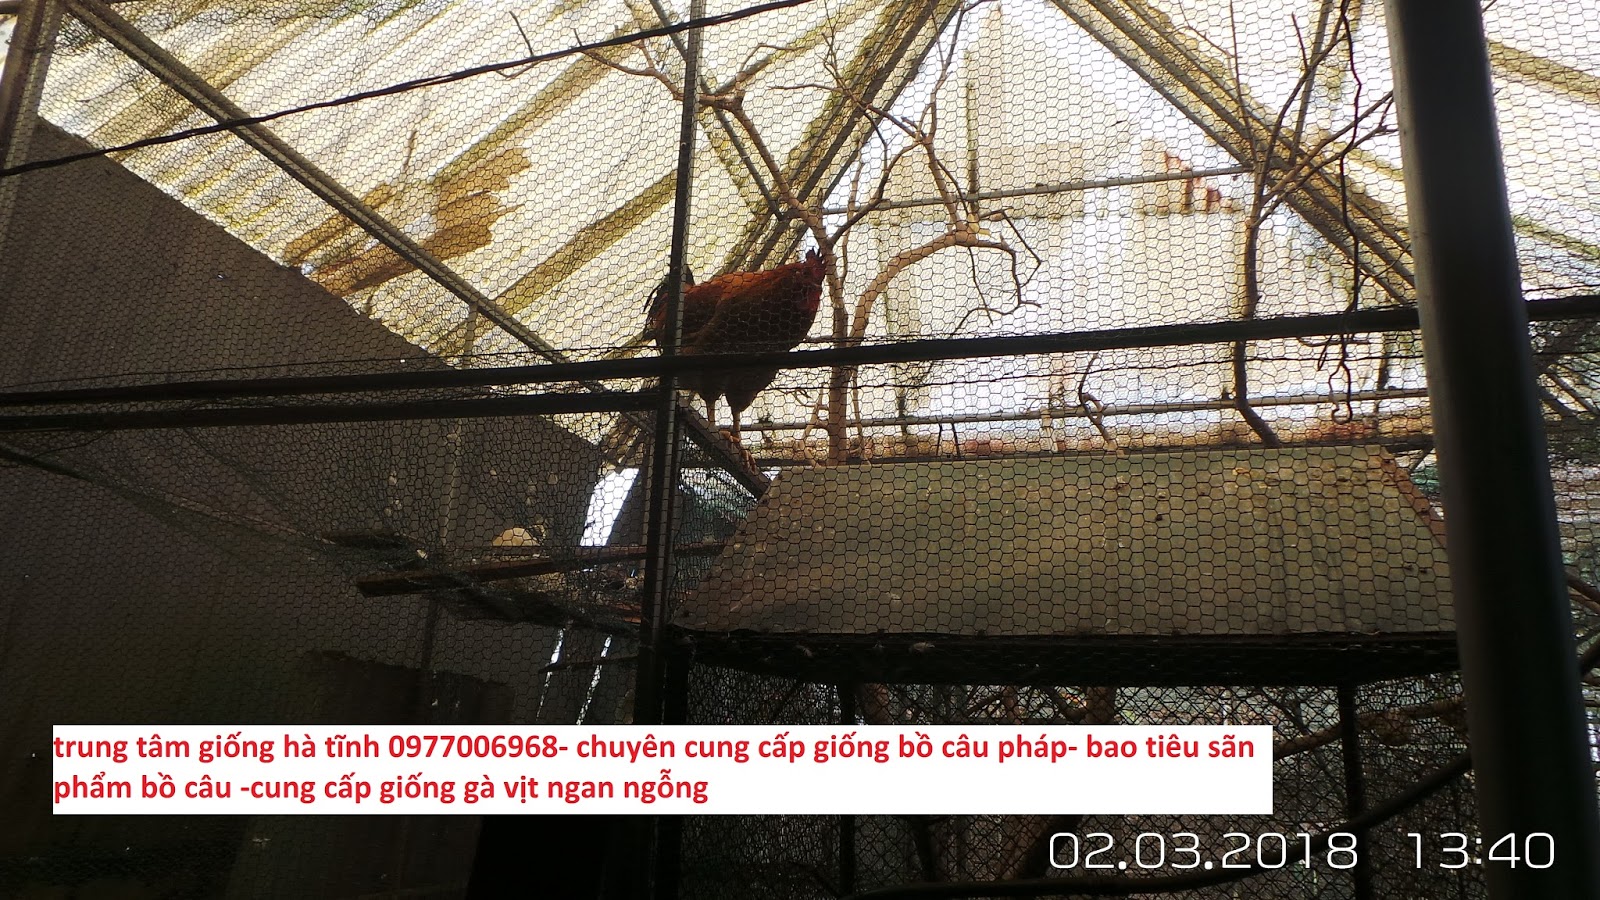 20 các loài chim cảnh nhỏ thường nuôi trong nhà ở Việt Nam